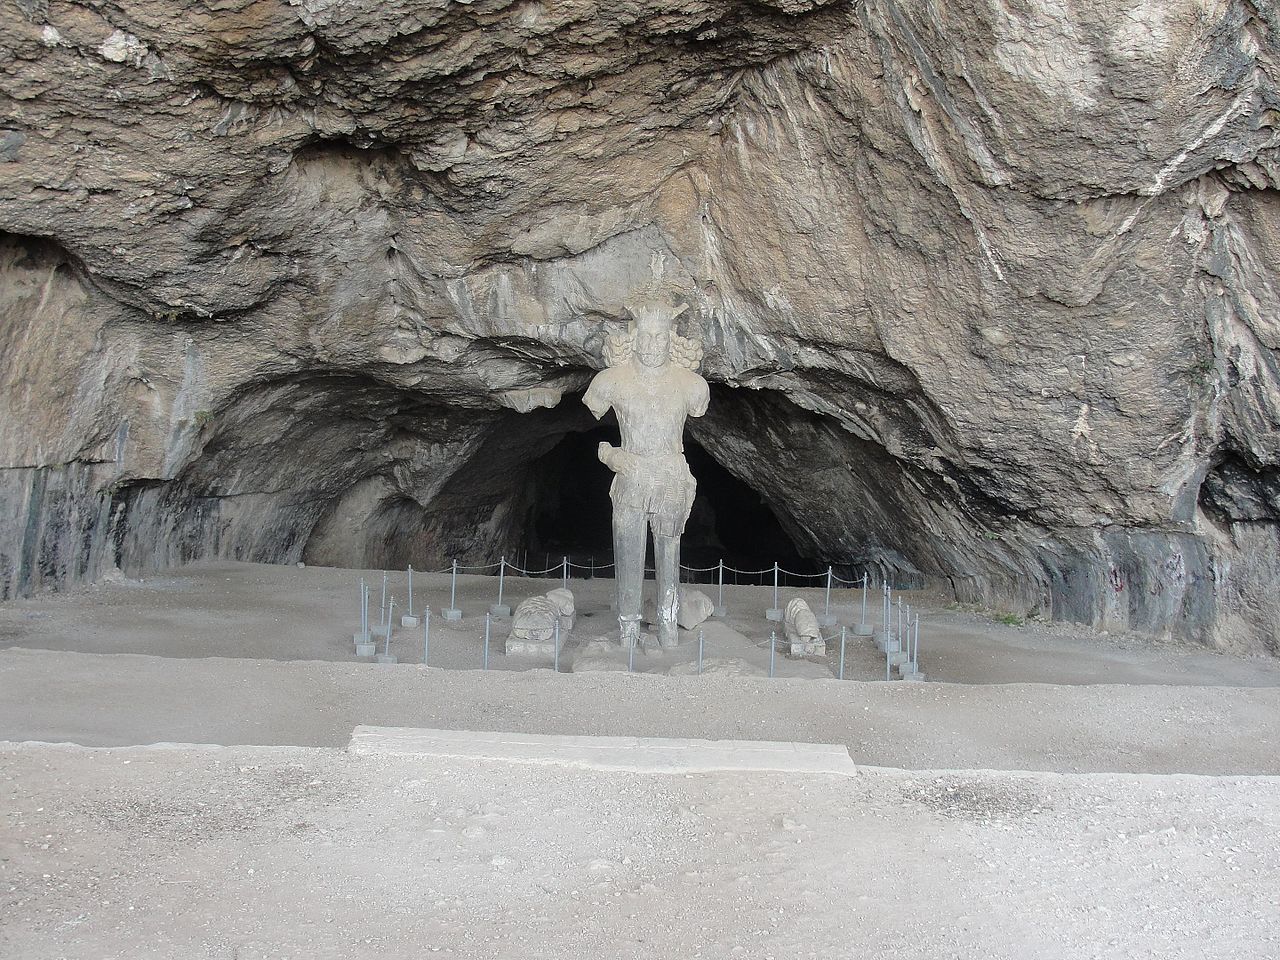 غار شاپور در شهر کازرون